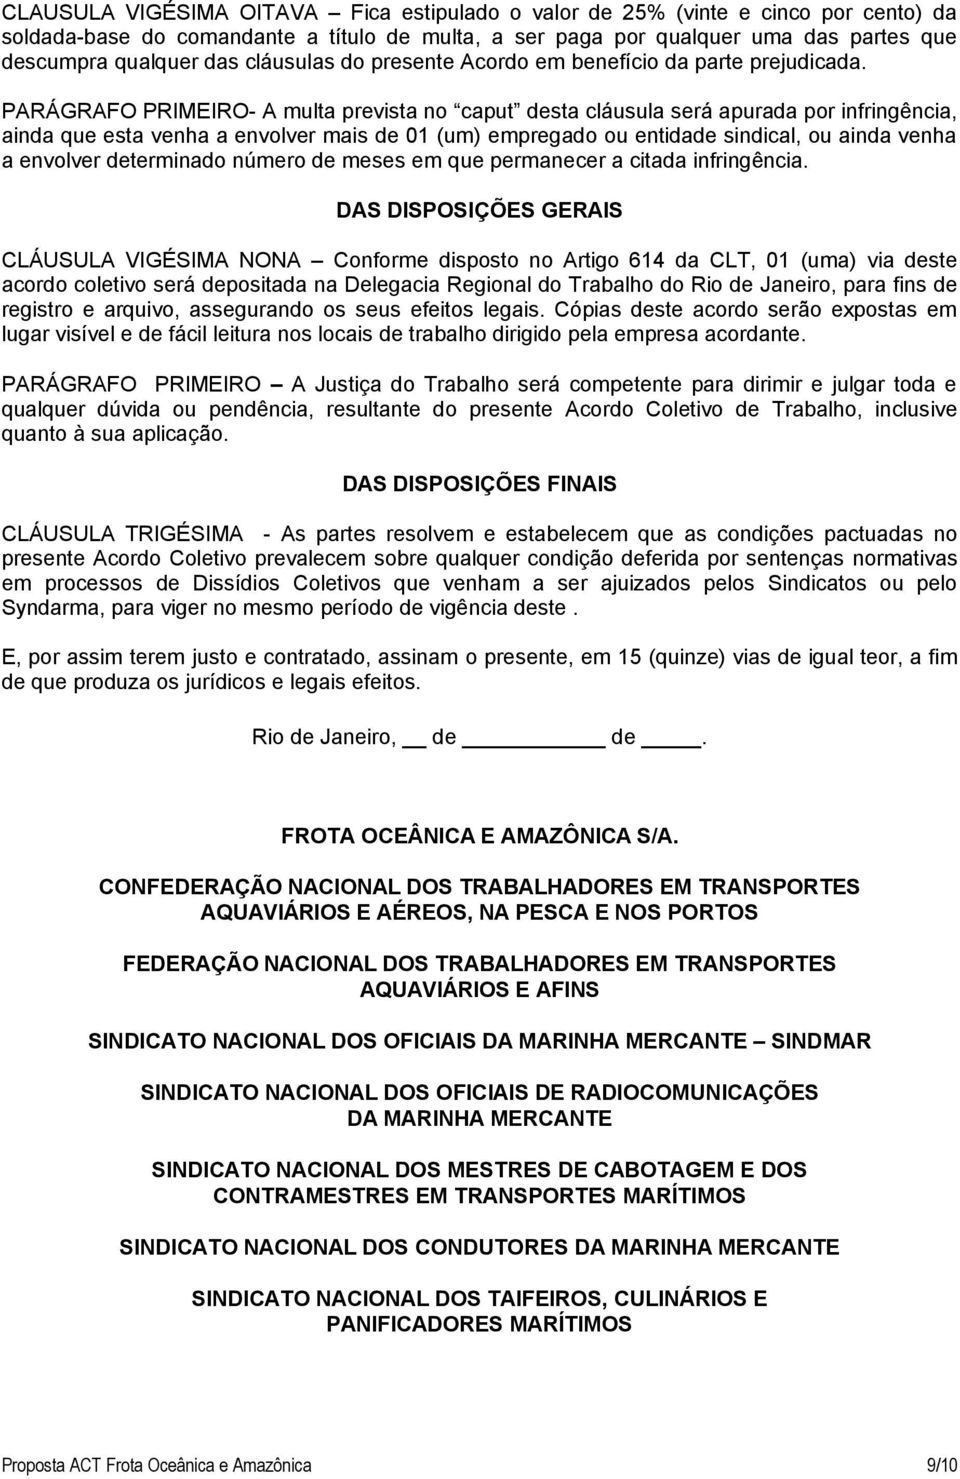 PARÁGRAFO PRIMEIRO- A multa prevista no caput desta cláusula será apurada por infringência, ainda que esta venha a envolver mais de 01 (um) empregado ou entidade sindical, ou ainda venha a envolver